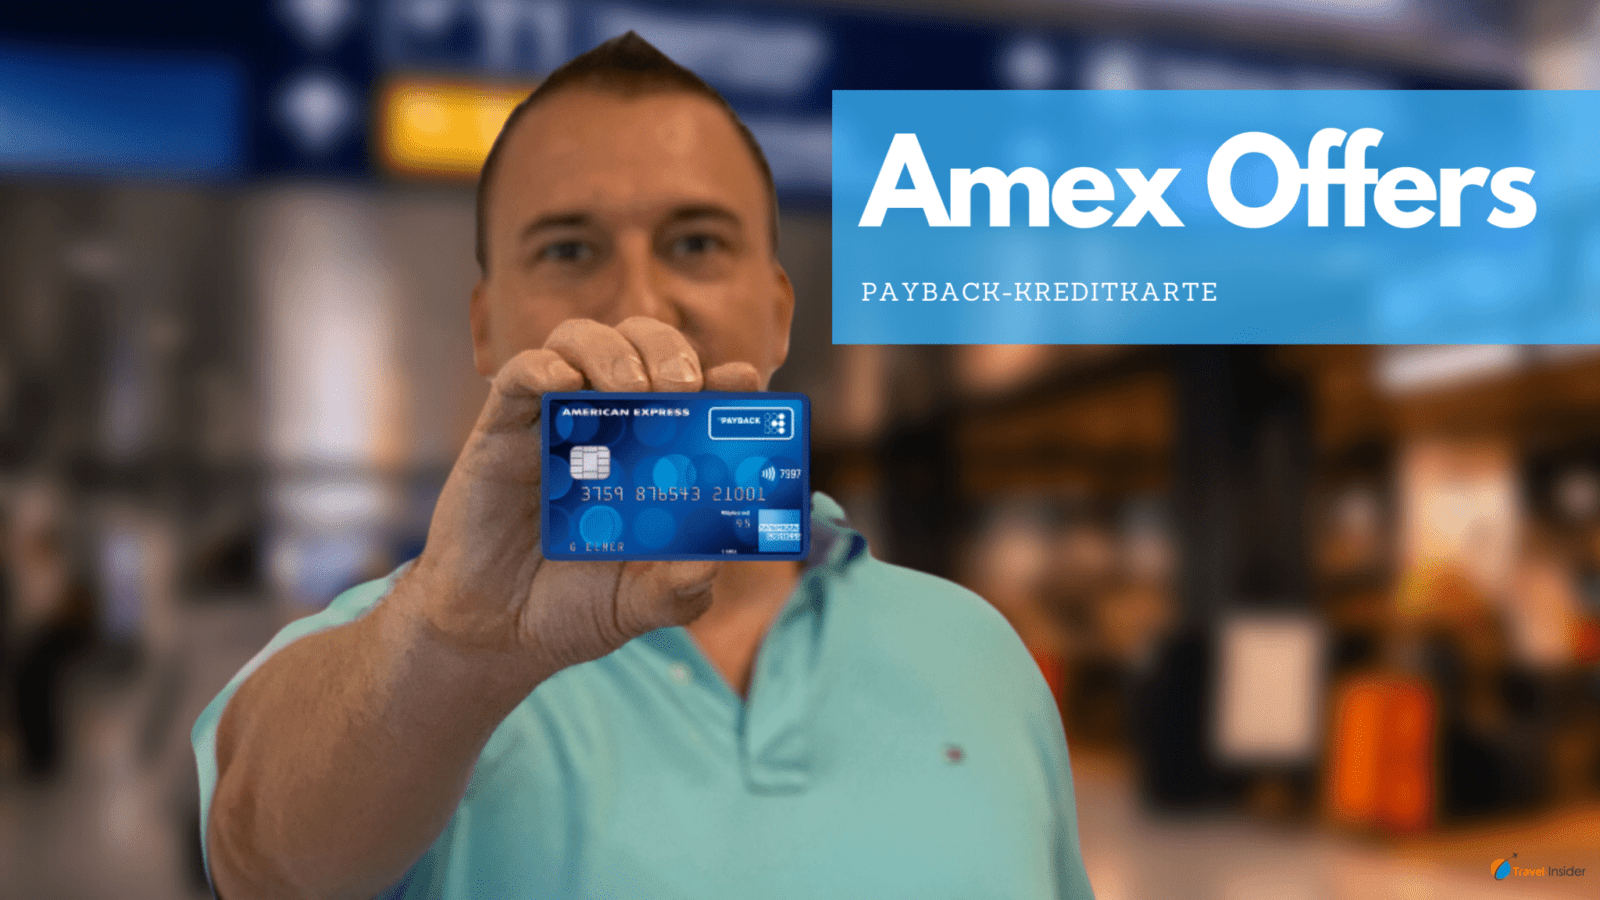 15 Euro mit Amex Offers für PayPal-Zahlung mit der Payback-Kreditkarte